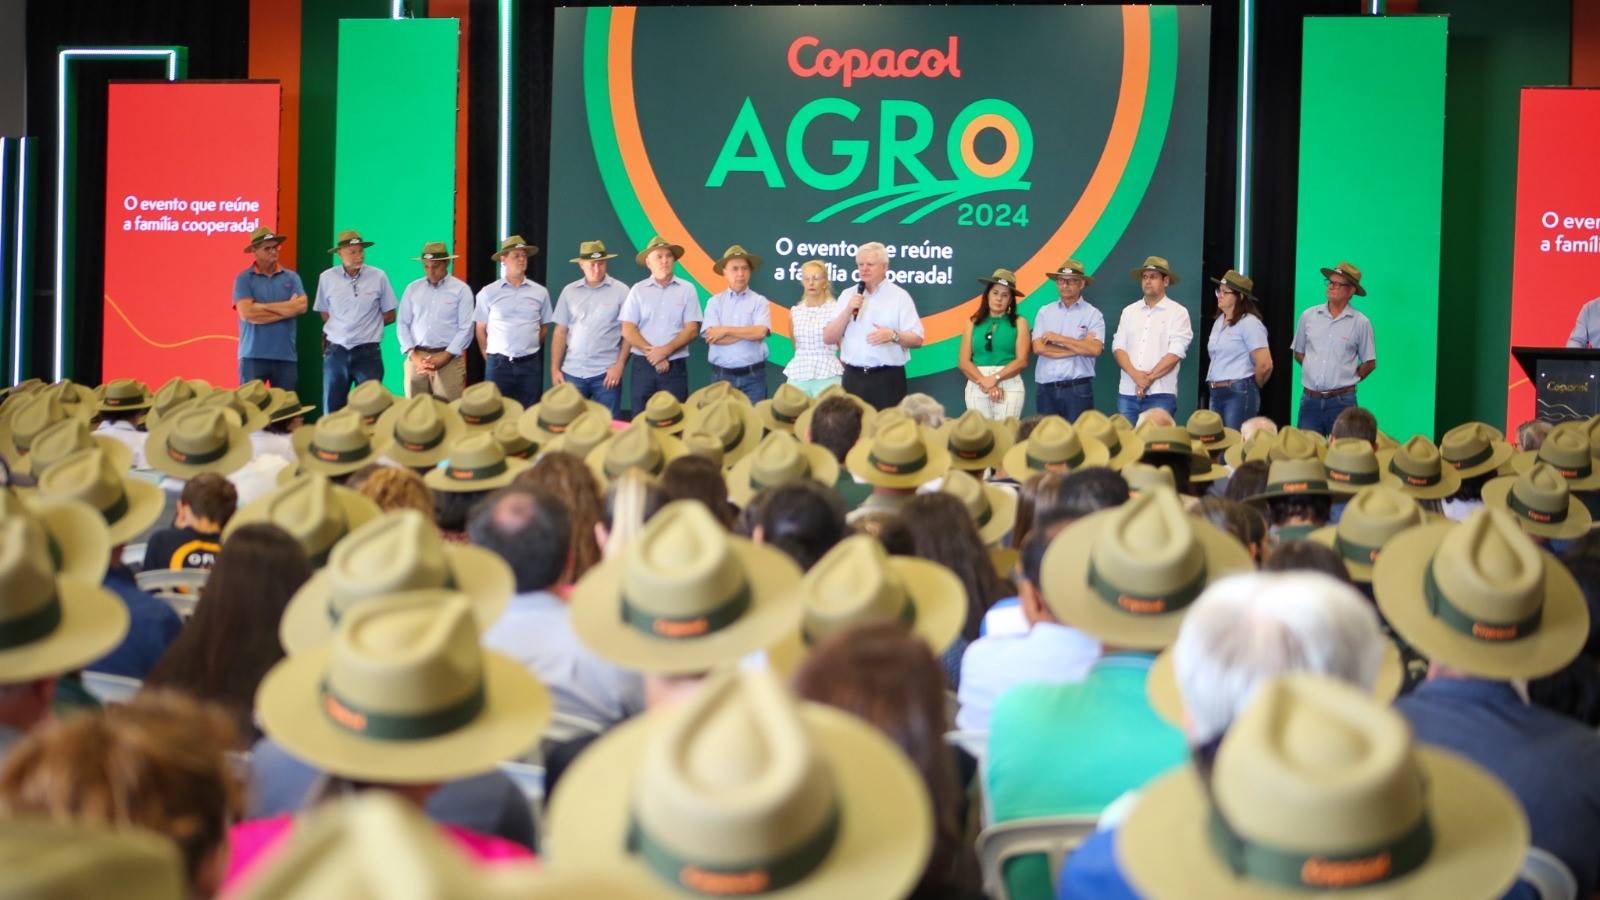 Copacol Agro: Uma Vitrine Tecnológica para o Cooperativismo